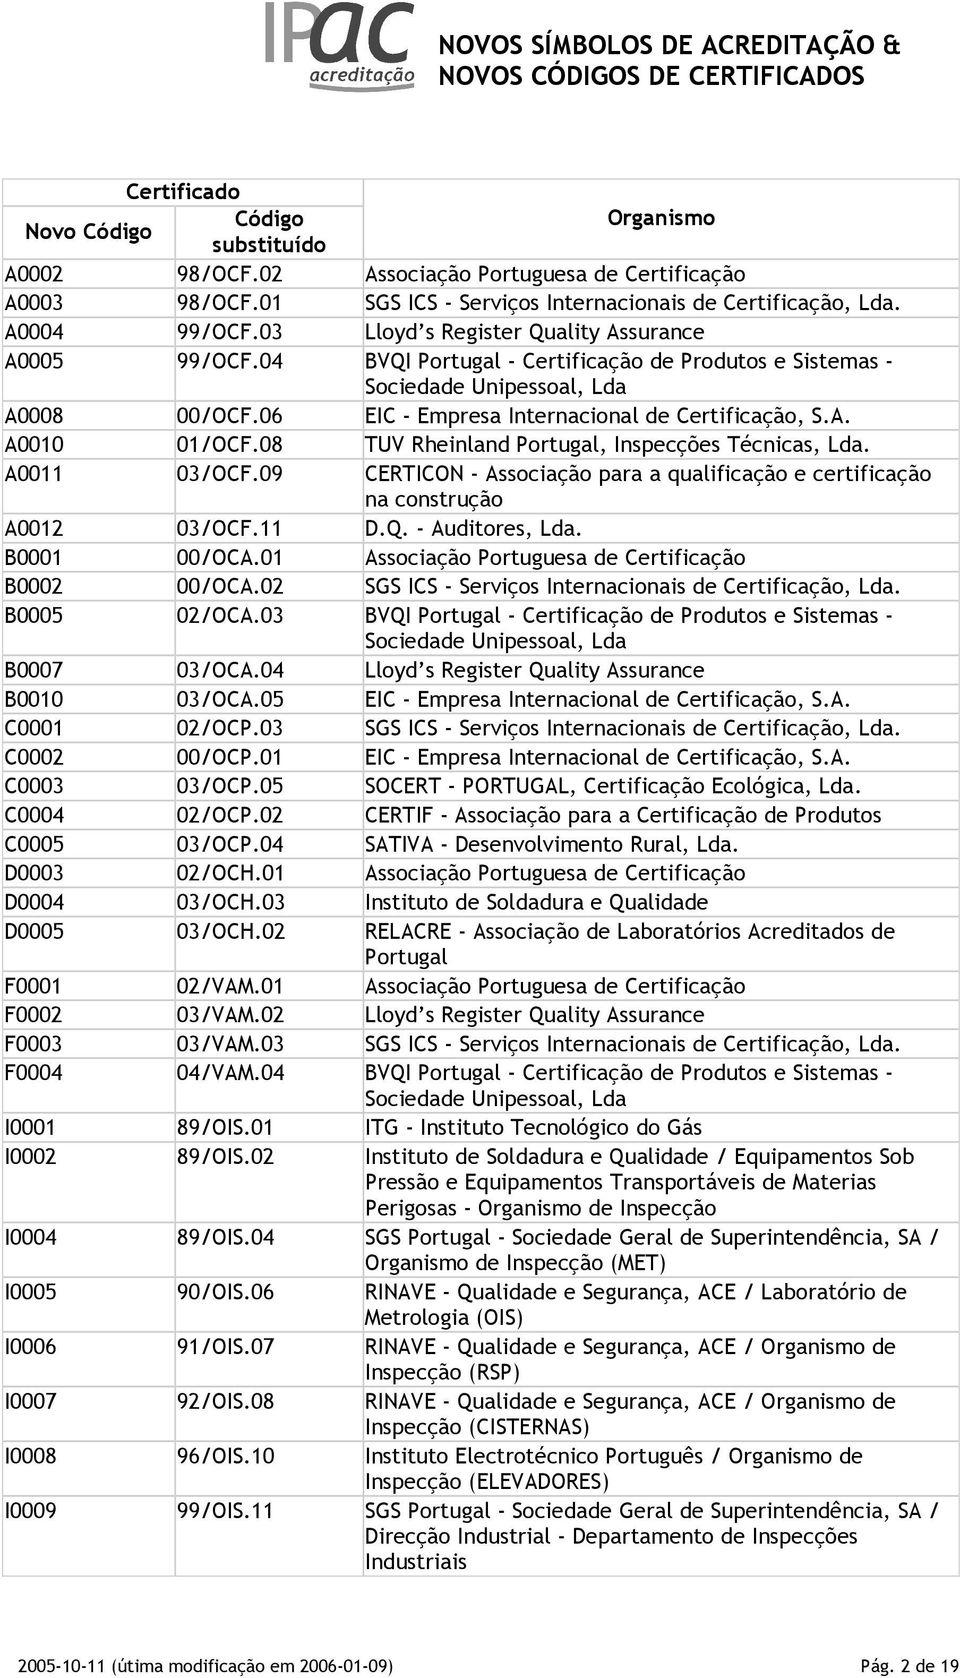 08 TUV Rheinland Portugal, Inspecções Técnicas, Lda. A0011 03/OCF.09 CERTICON - Associação para a qualificação e certificação na construção A0012 03/OCF.11 D.Q. - Auditores, Lda. B0001 00/OCA.